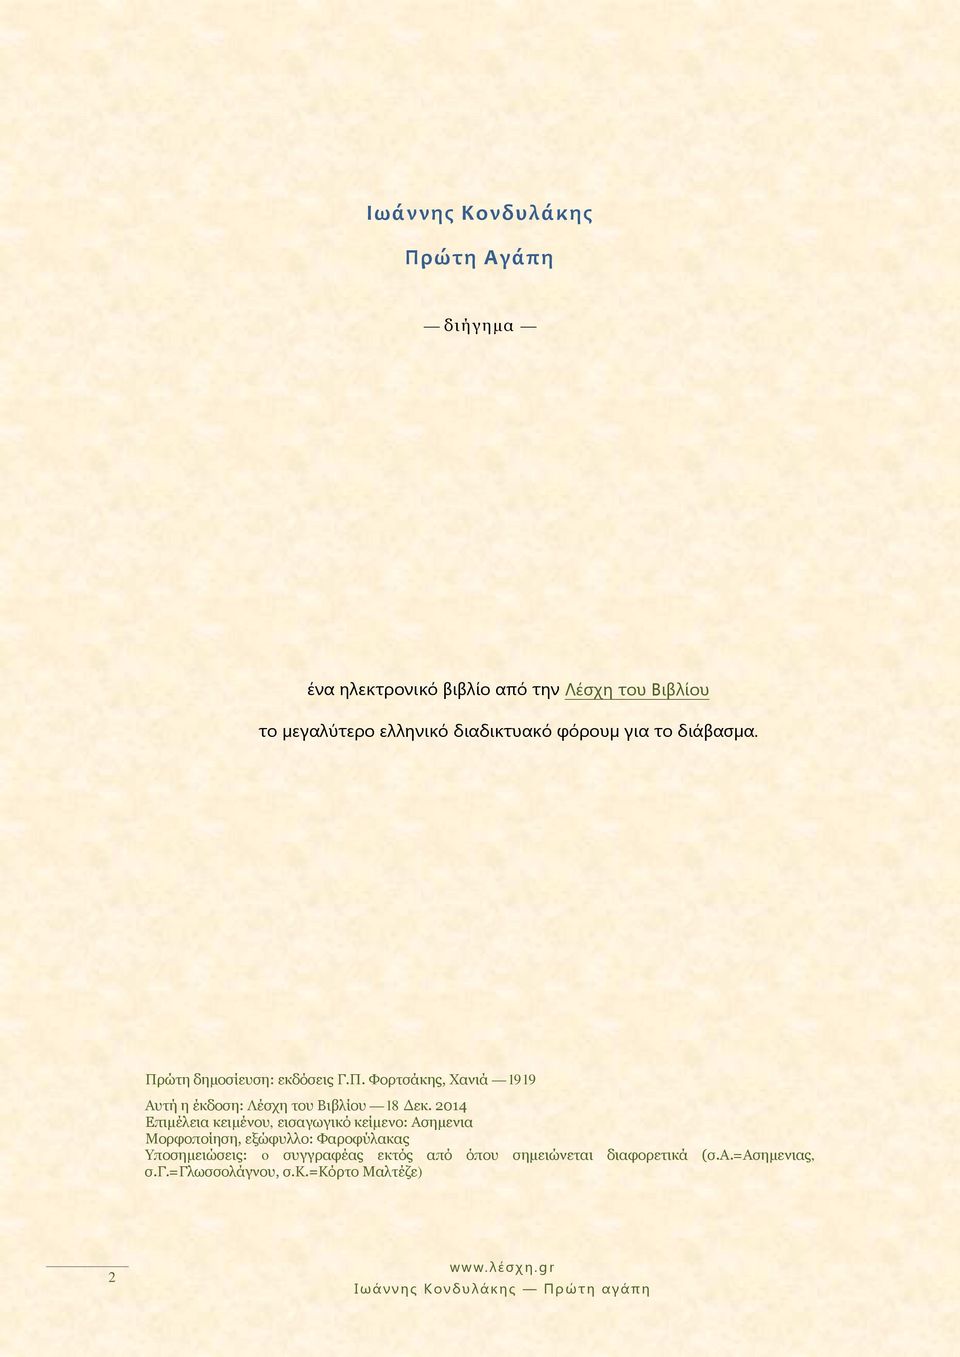 2014 Επιμέλεια κειμένου, εισαγωγικό κείμενο: Ασημενια Μορφοποίηση, εξώφυλλο: Φαροφύλακας Υποσημειώσεις: o